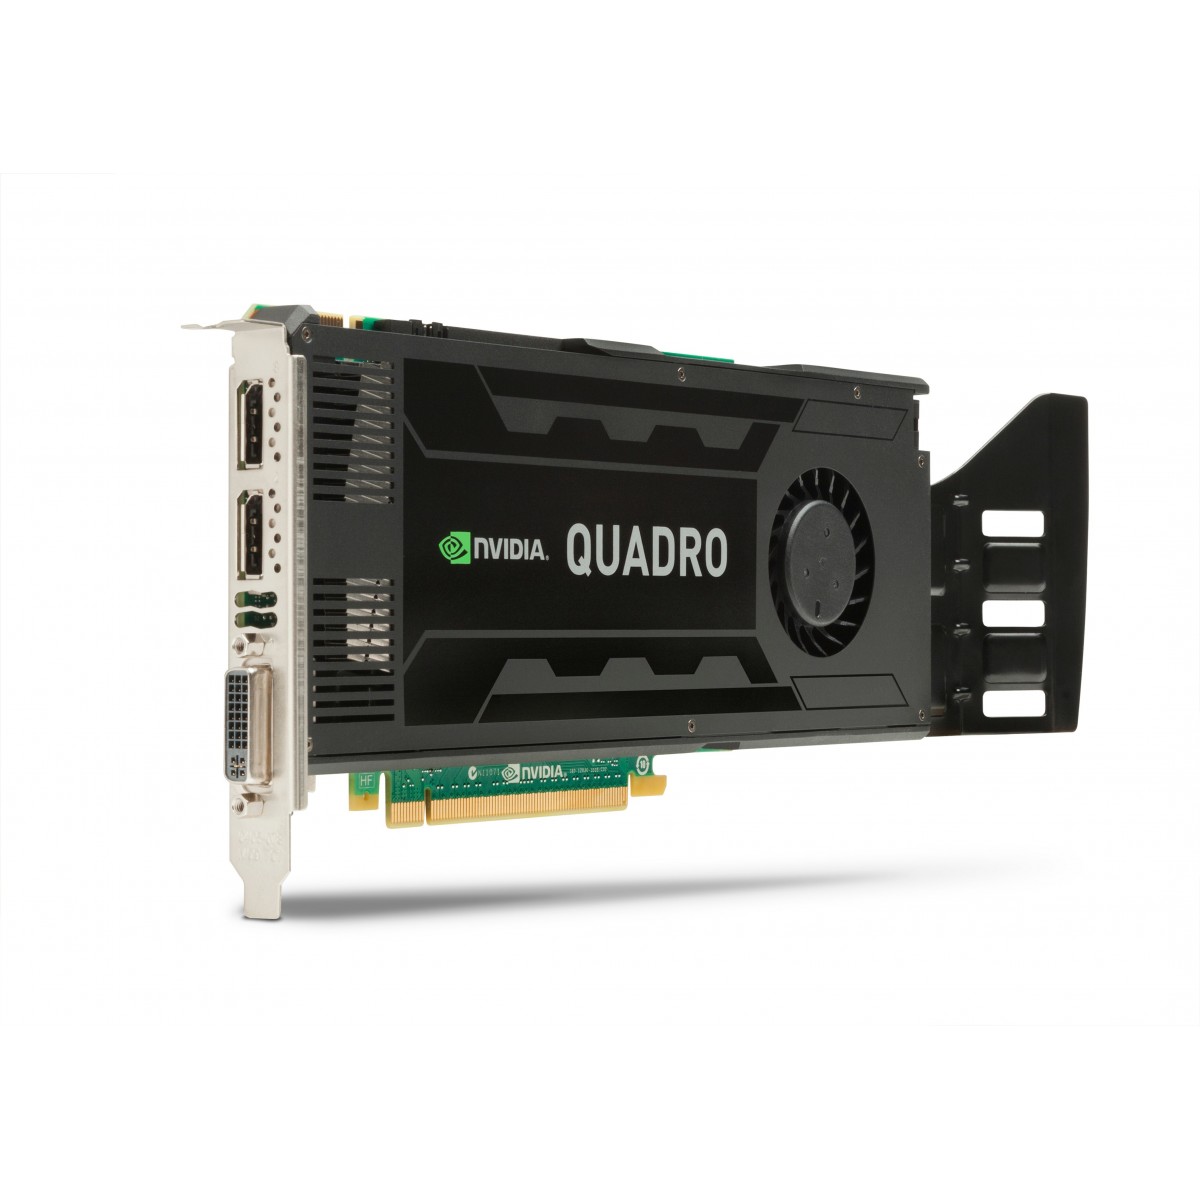 HP C2J94AA - Quadro K4000 - 3 GB - GDDR5 - 192 bit - 3840 x 2160 pixels - PCI Express x16